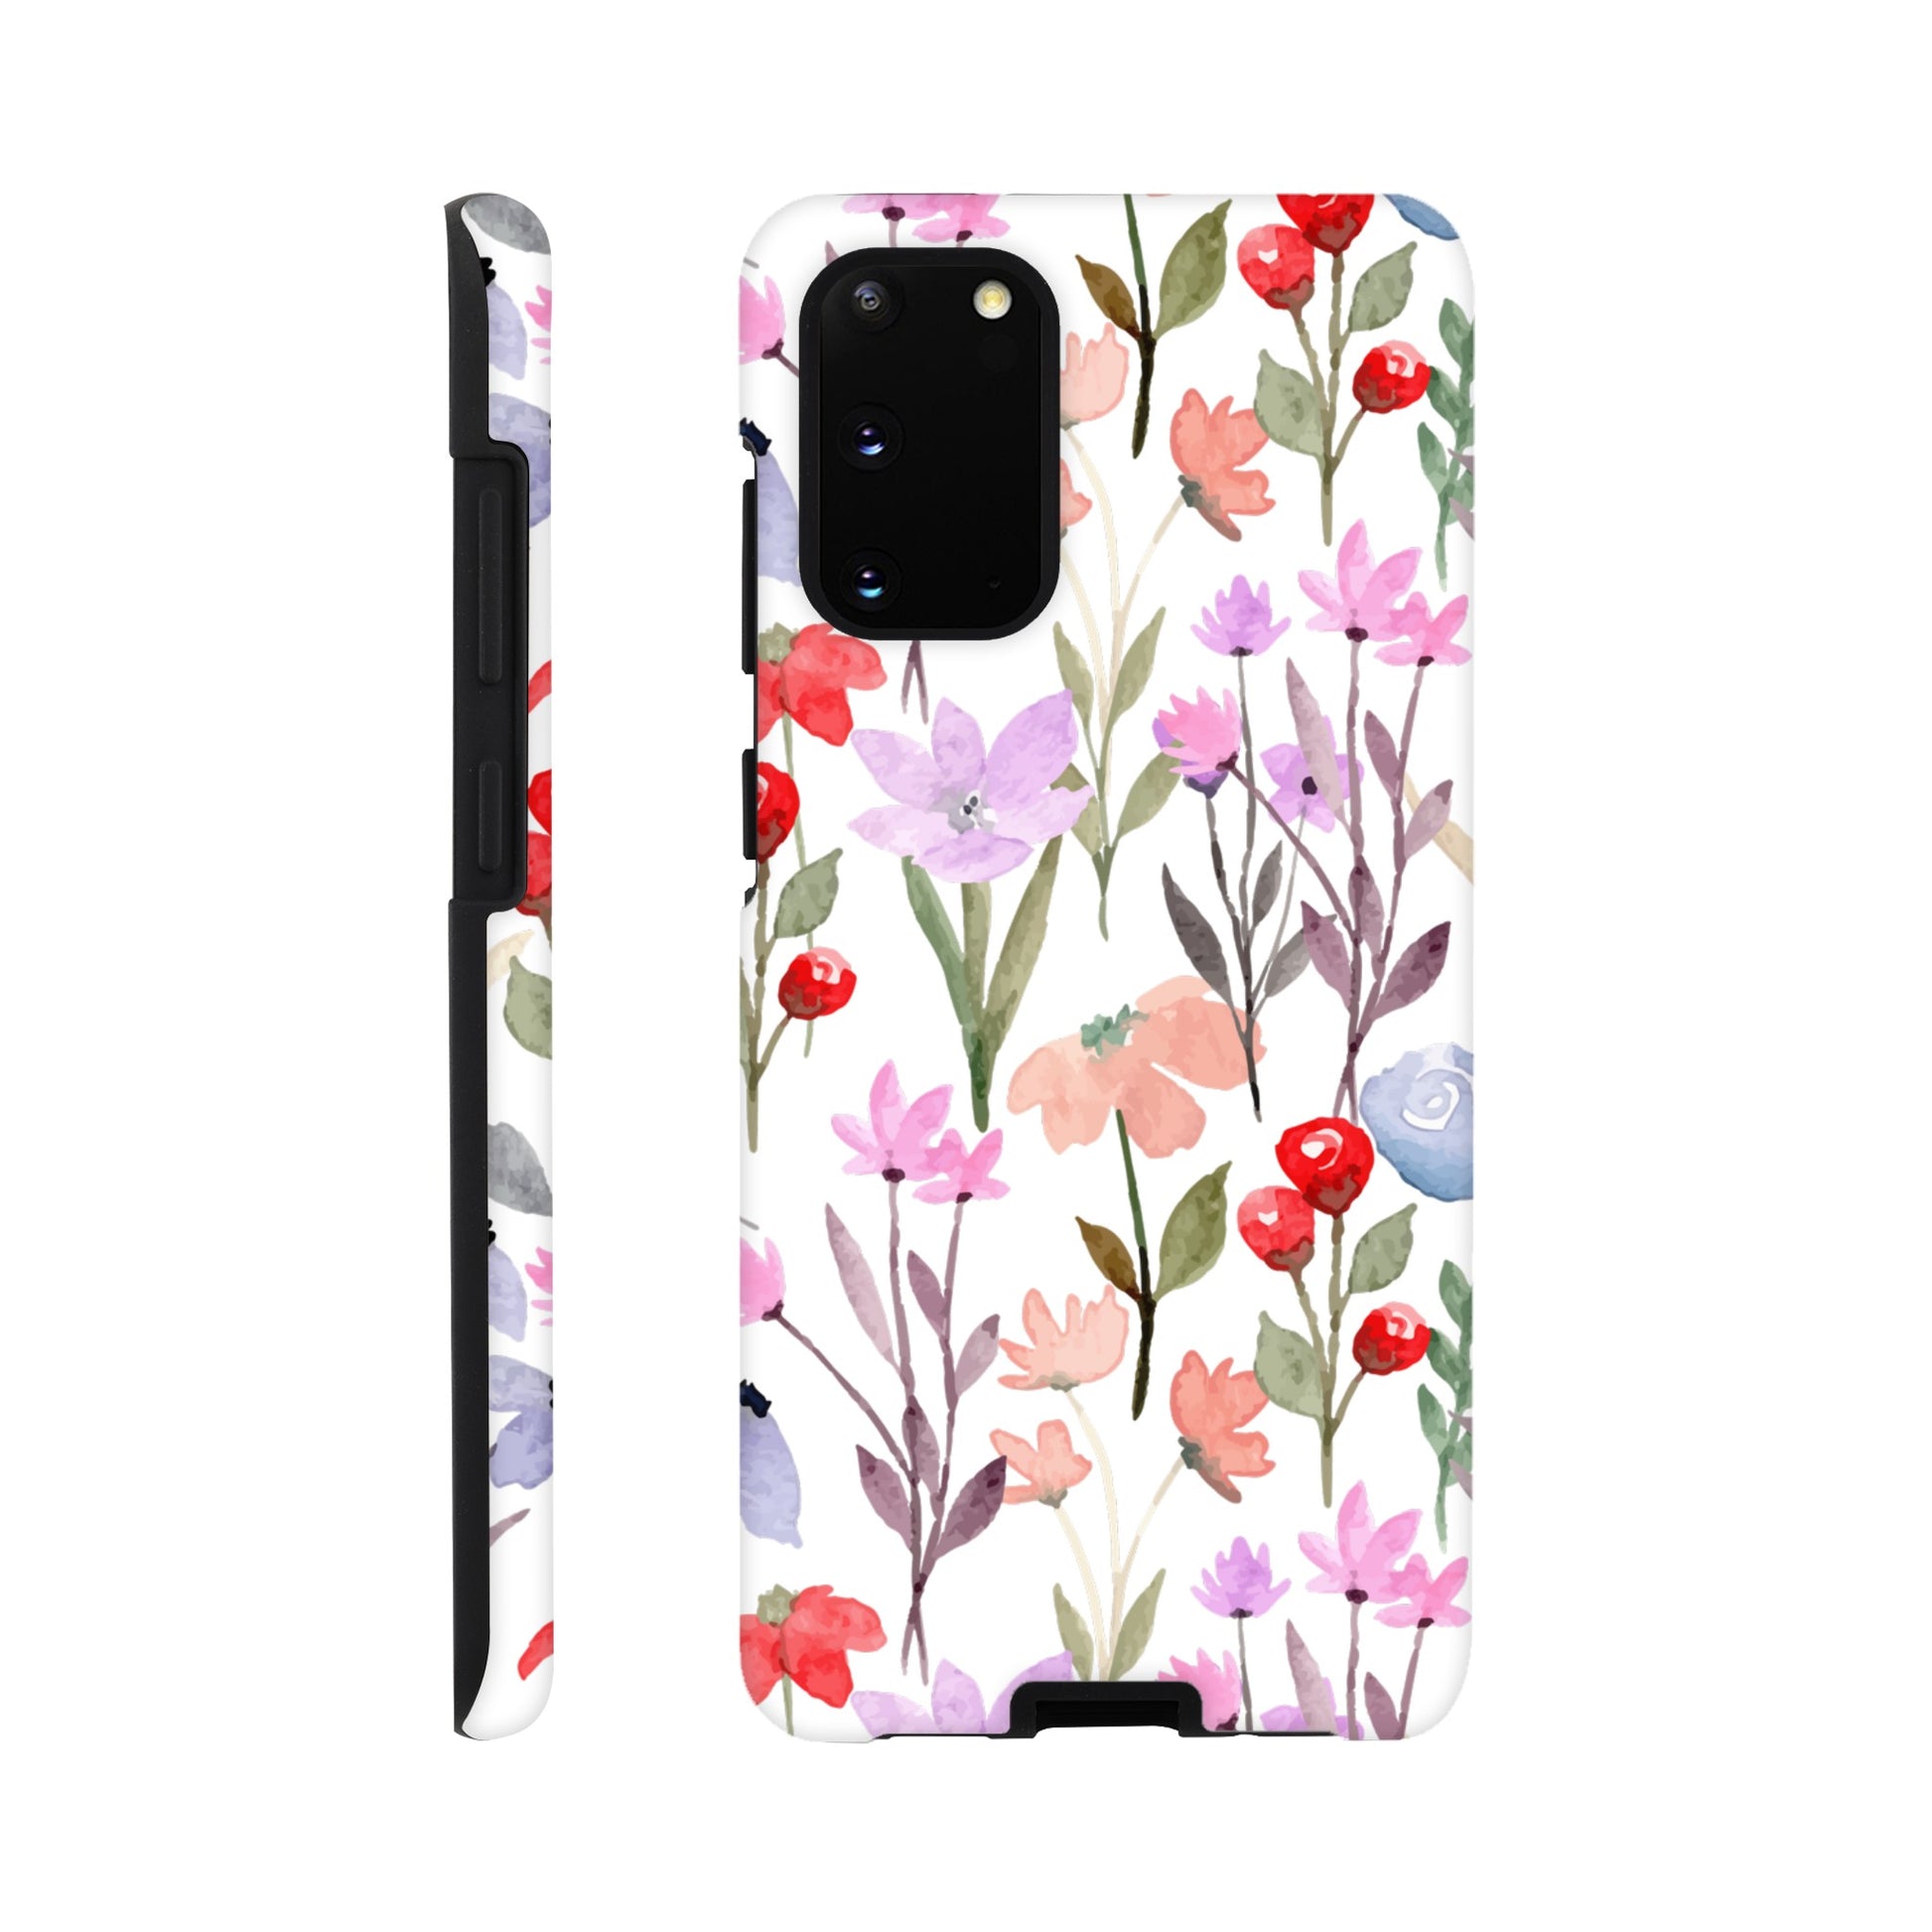 Watercolour Flowers - Phone Tough Case Galaxy S20 Phone Case Plants